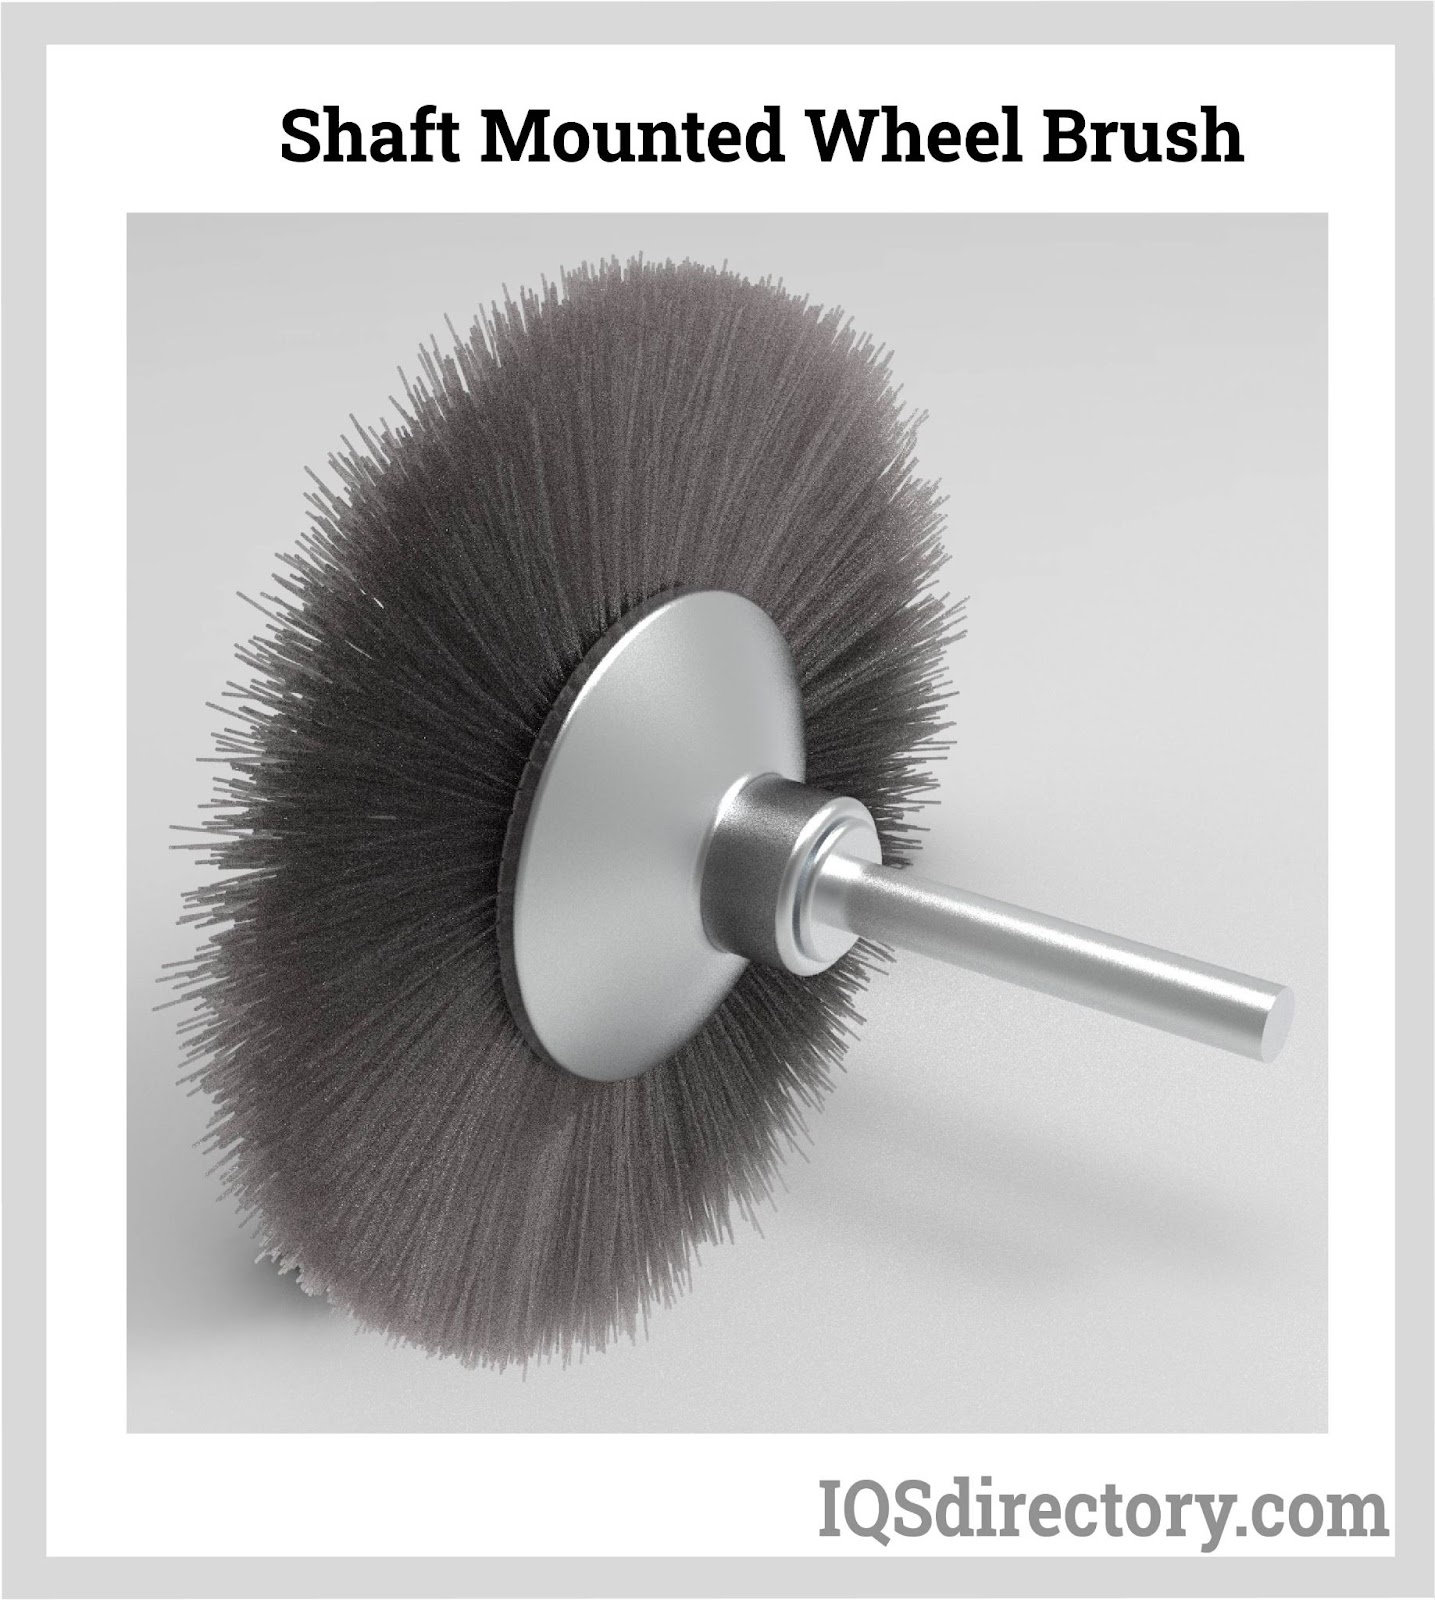 Shaft-Mounted Wheel Brush